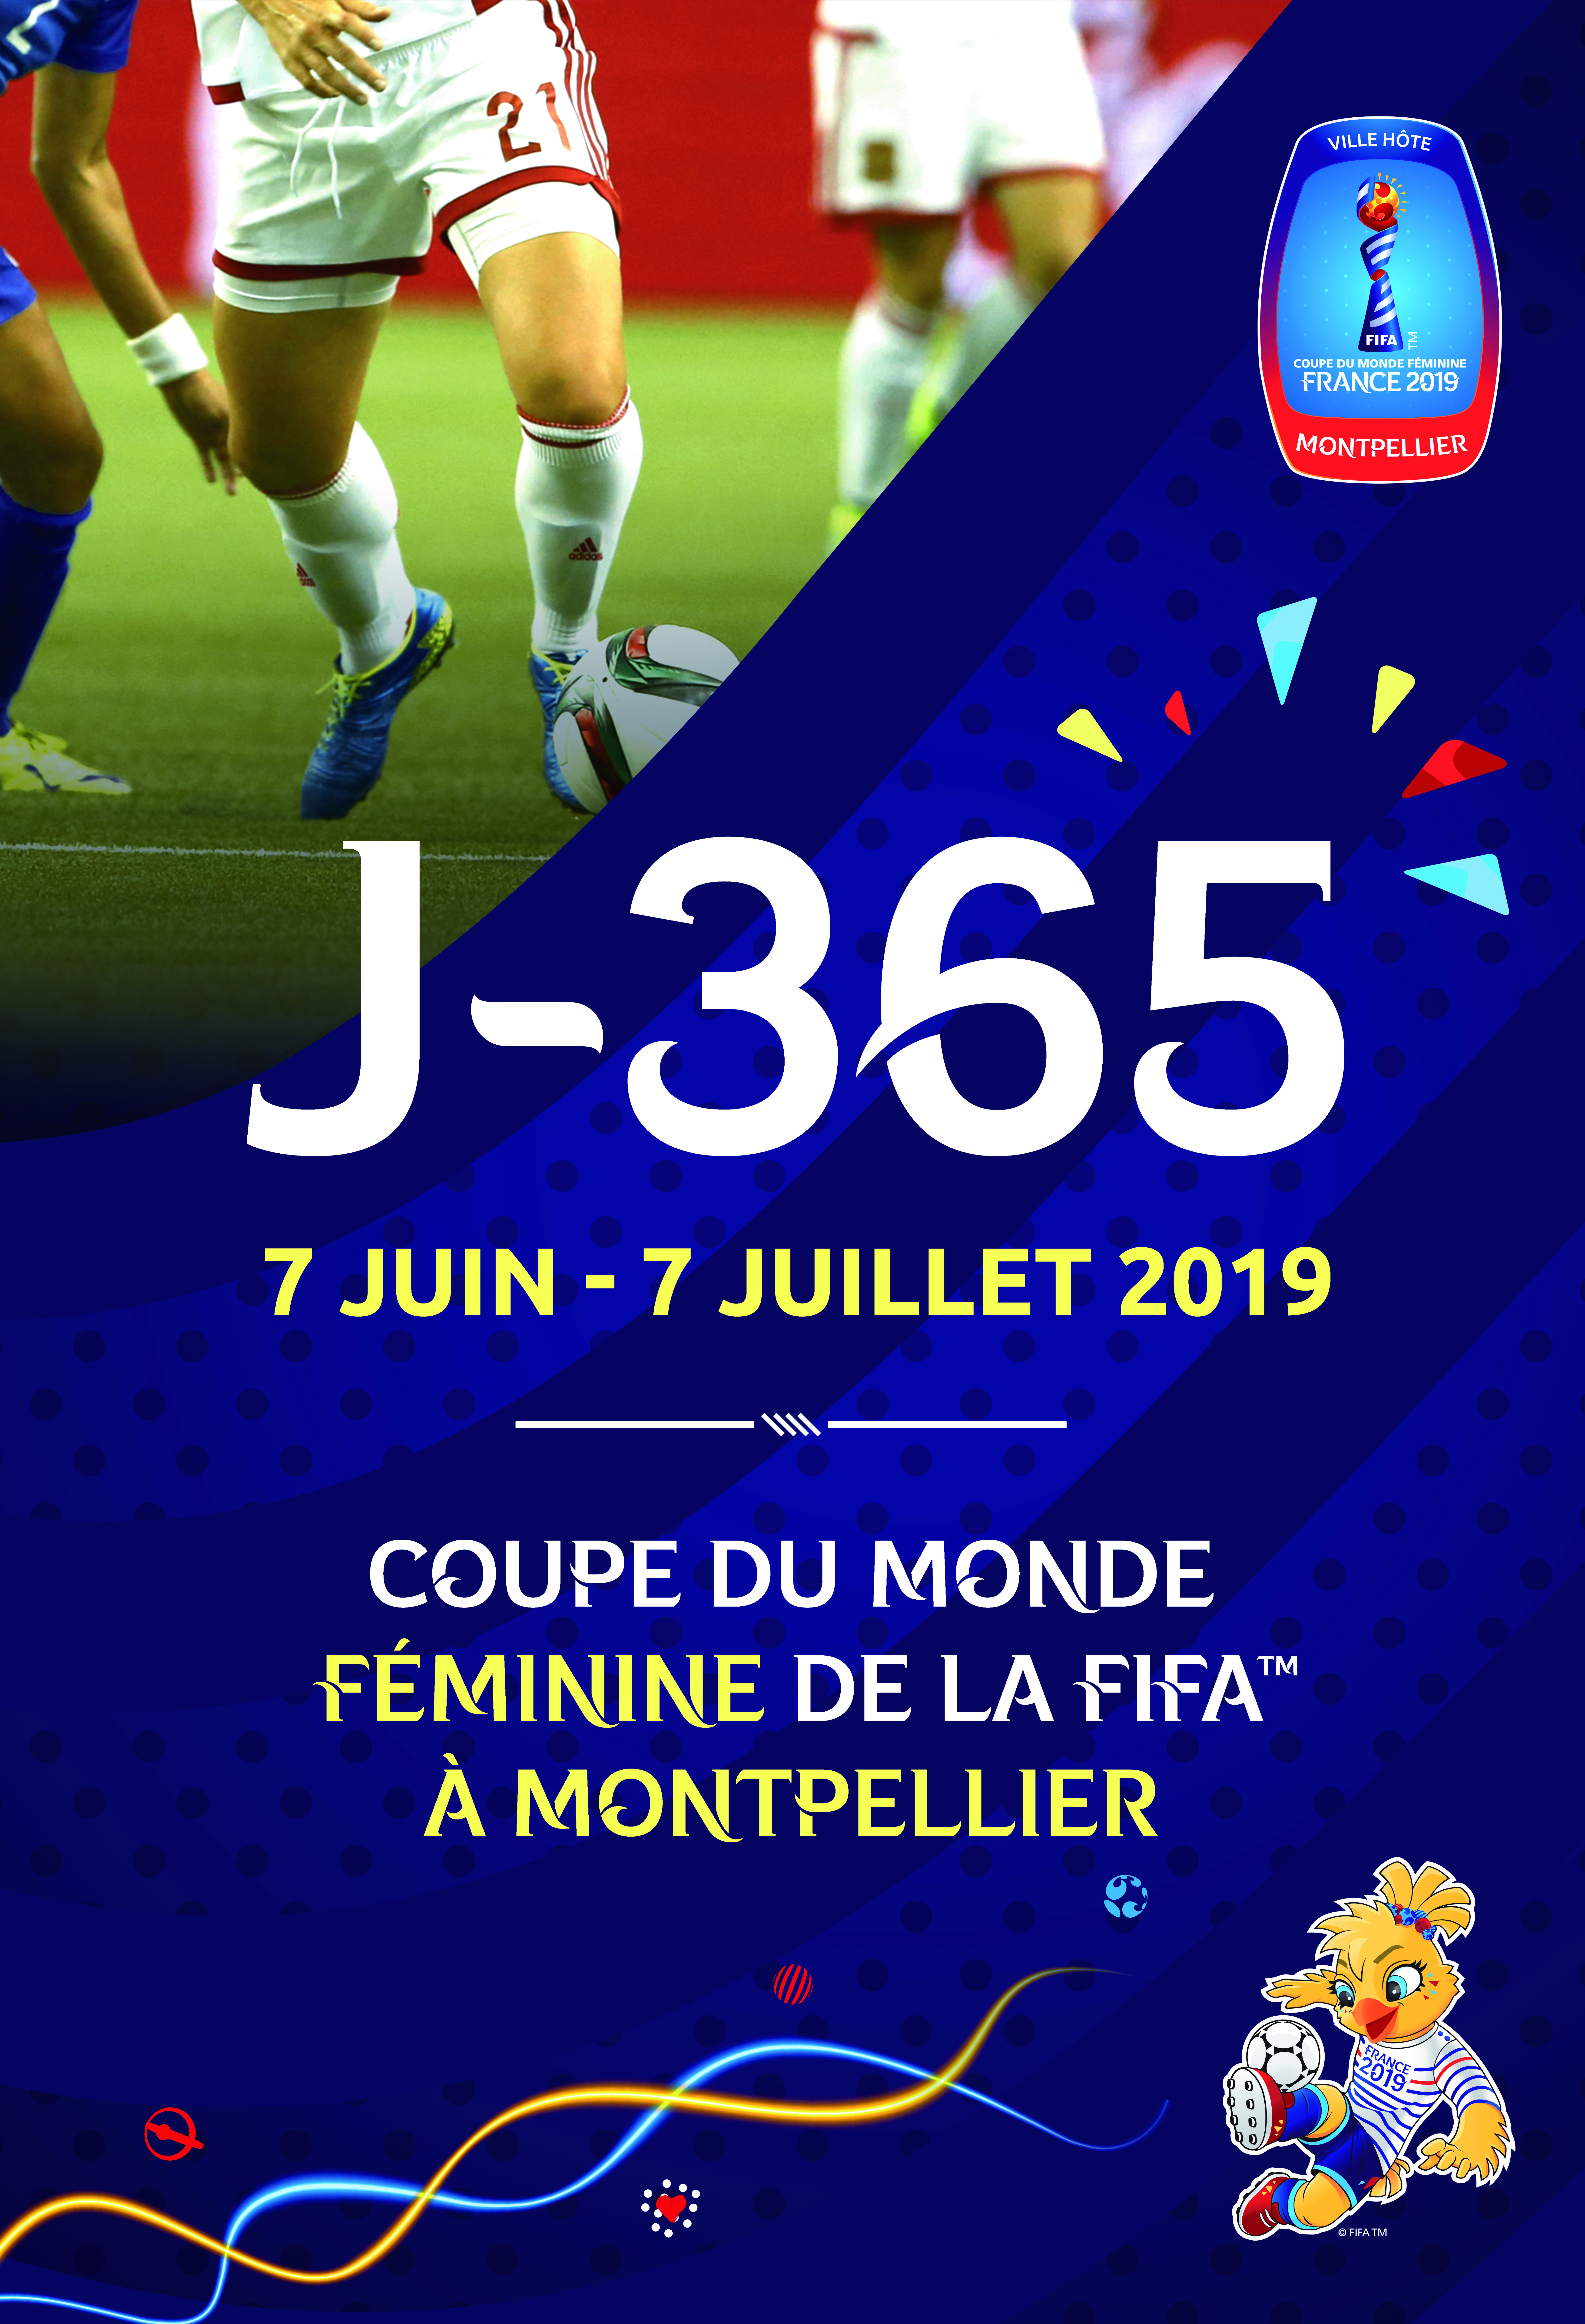 J-365 avant la coupe du monde féminine de la FIFA, France 2019 TM